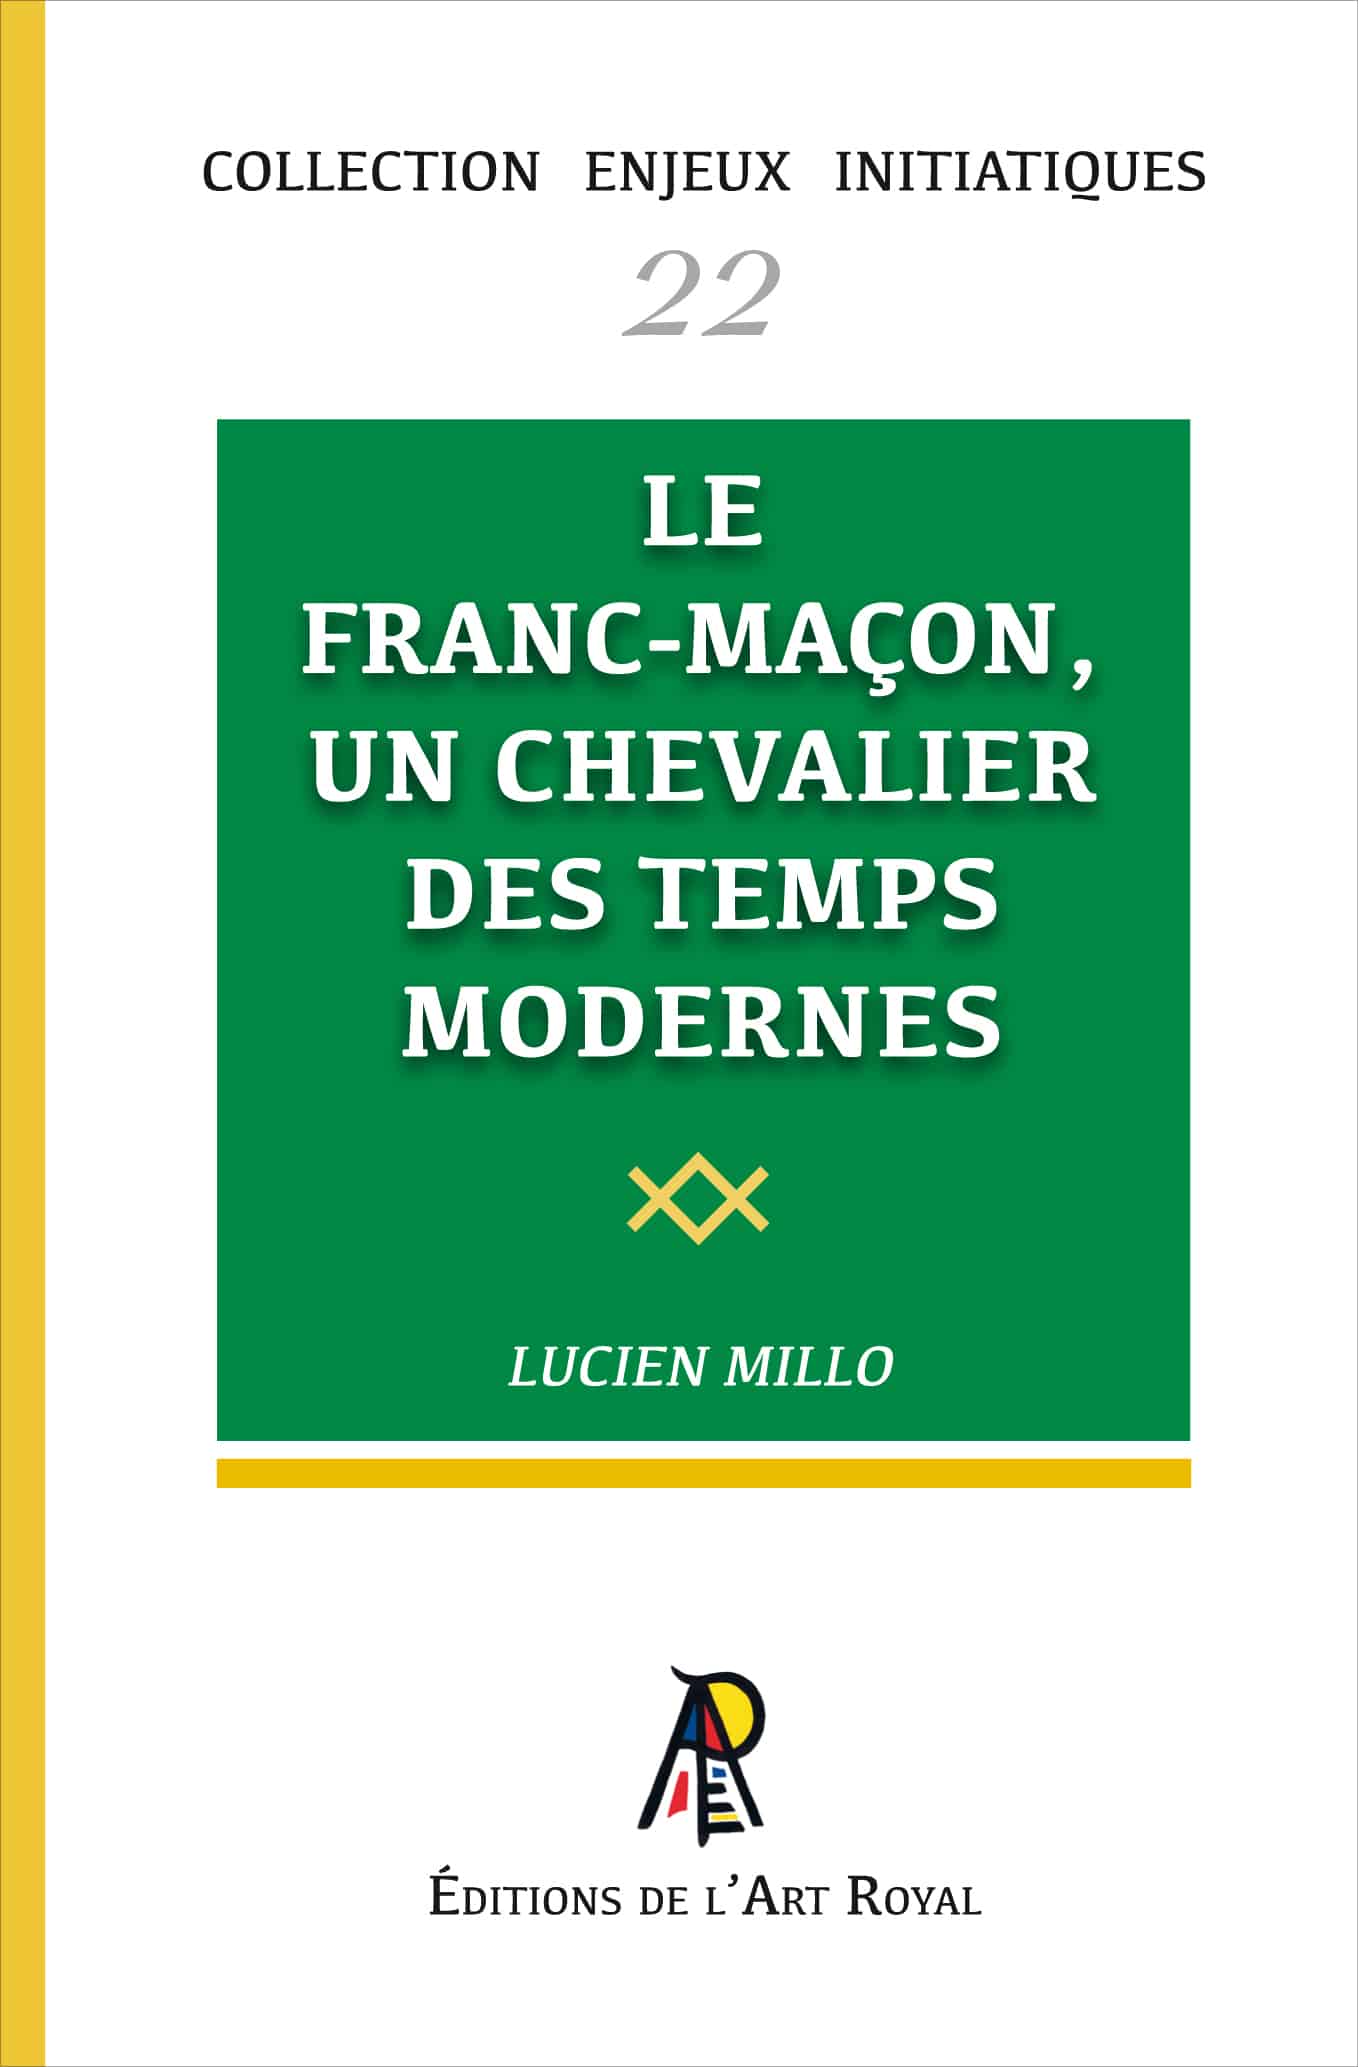 Le franc-maçon, un chevalier des temps modernes, Lucien Millo